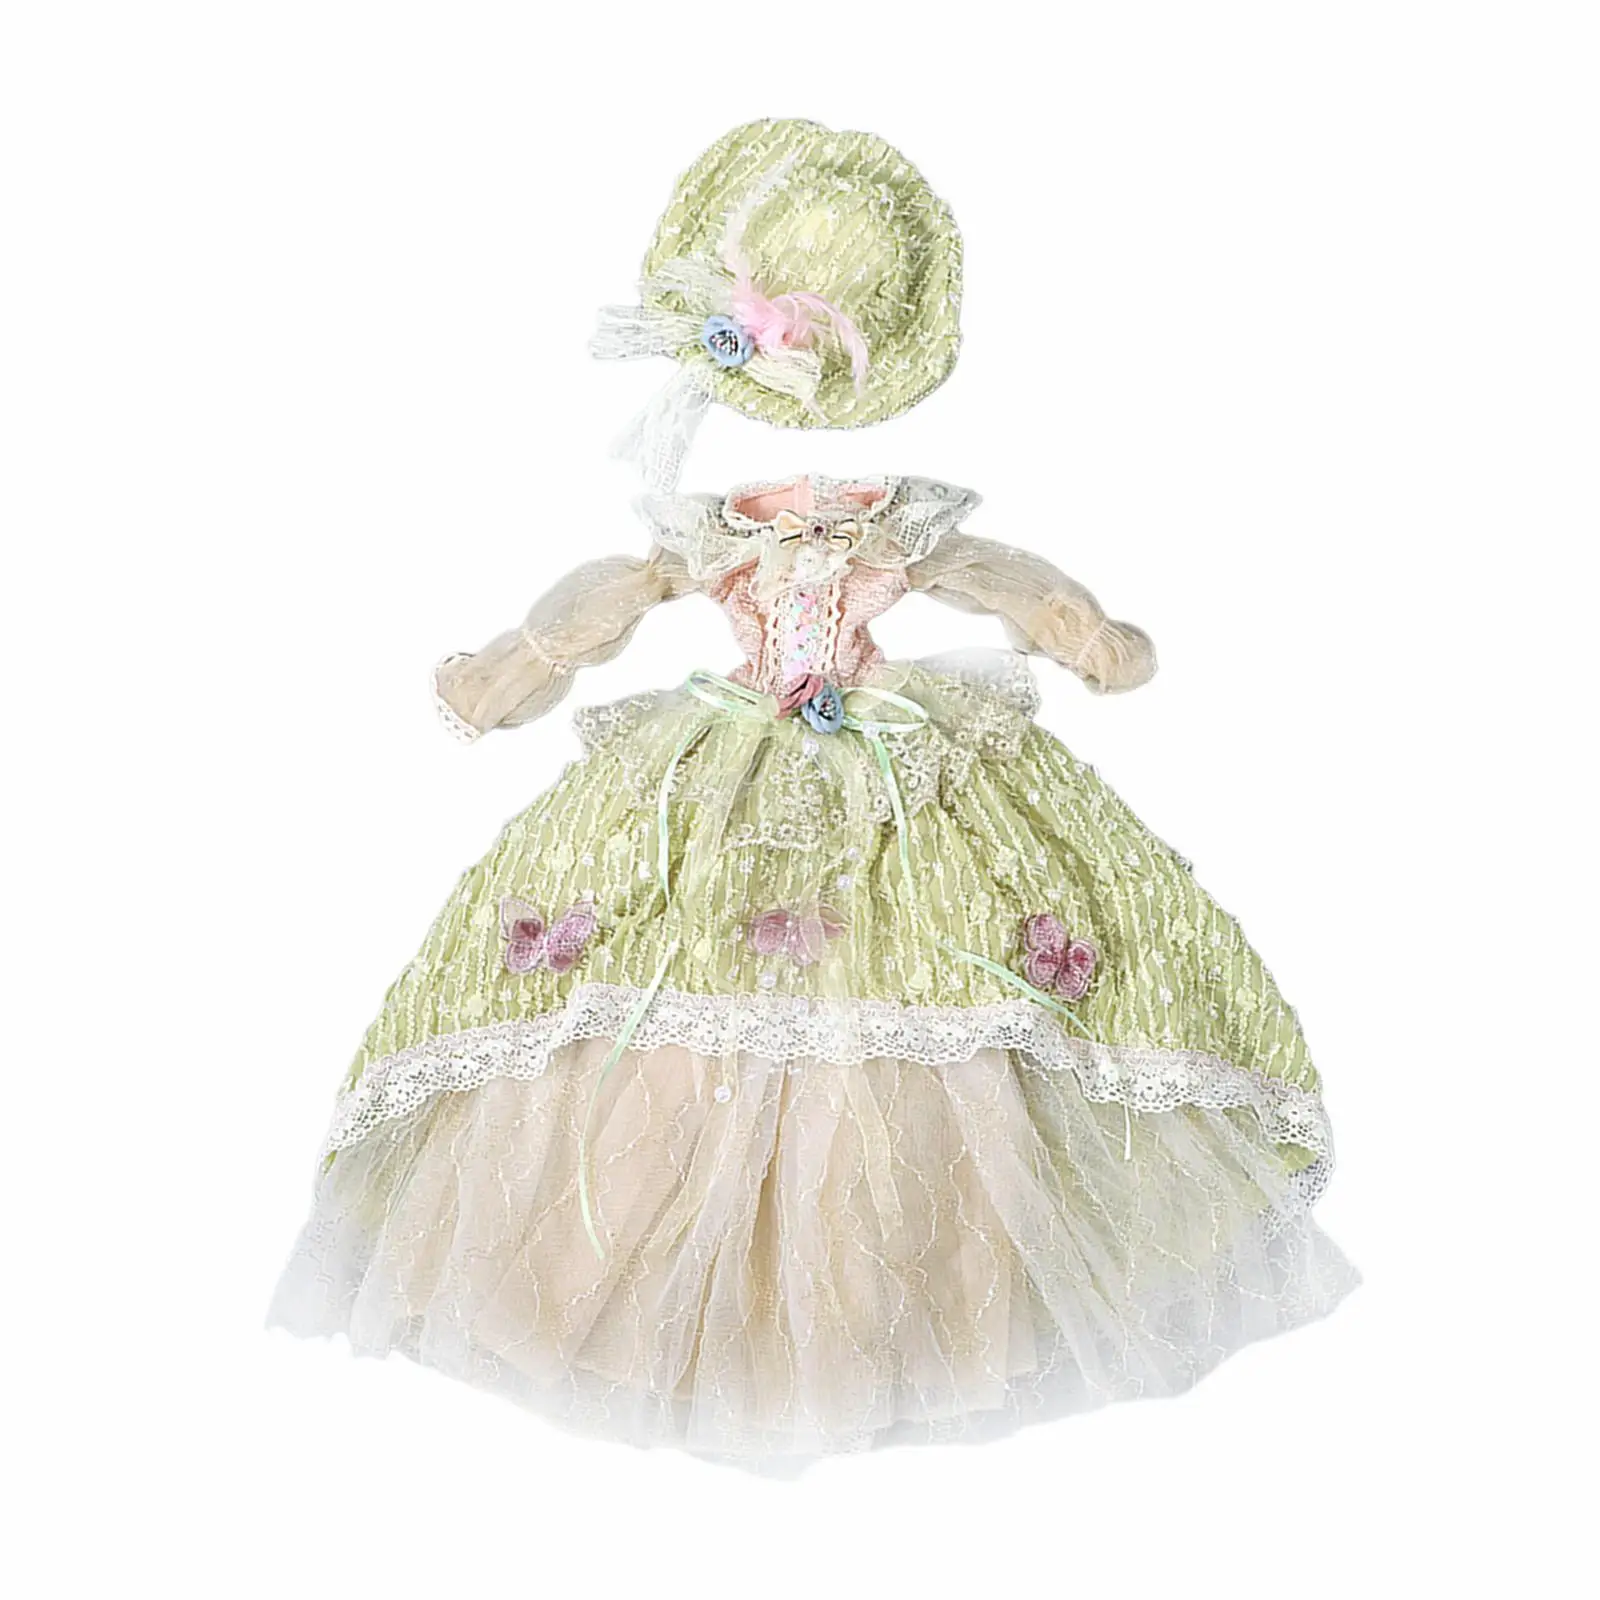 Платье для 1/3 куклы BJD Кукольная одежда Наряды Вечернее платье Изысканные детали Имитационная кукольная одежда 24-дюймовое платье для куклы в стиле ретро